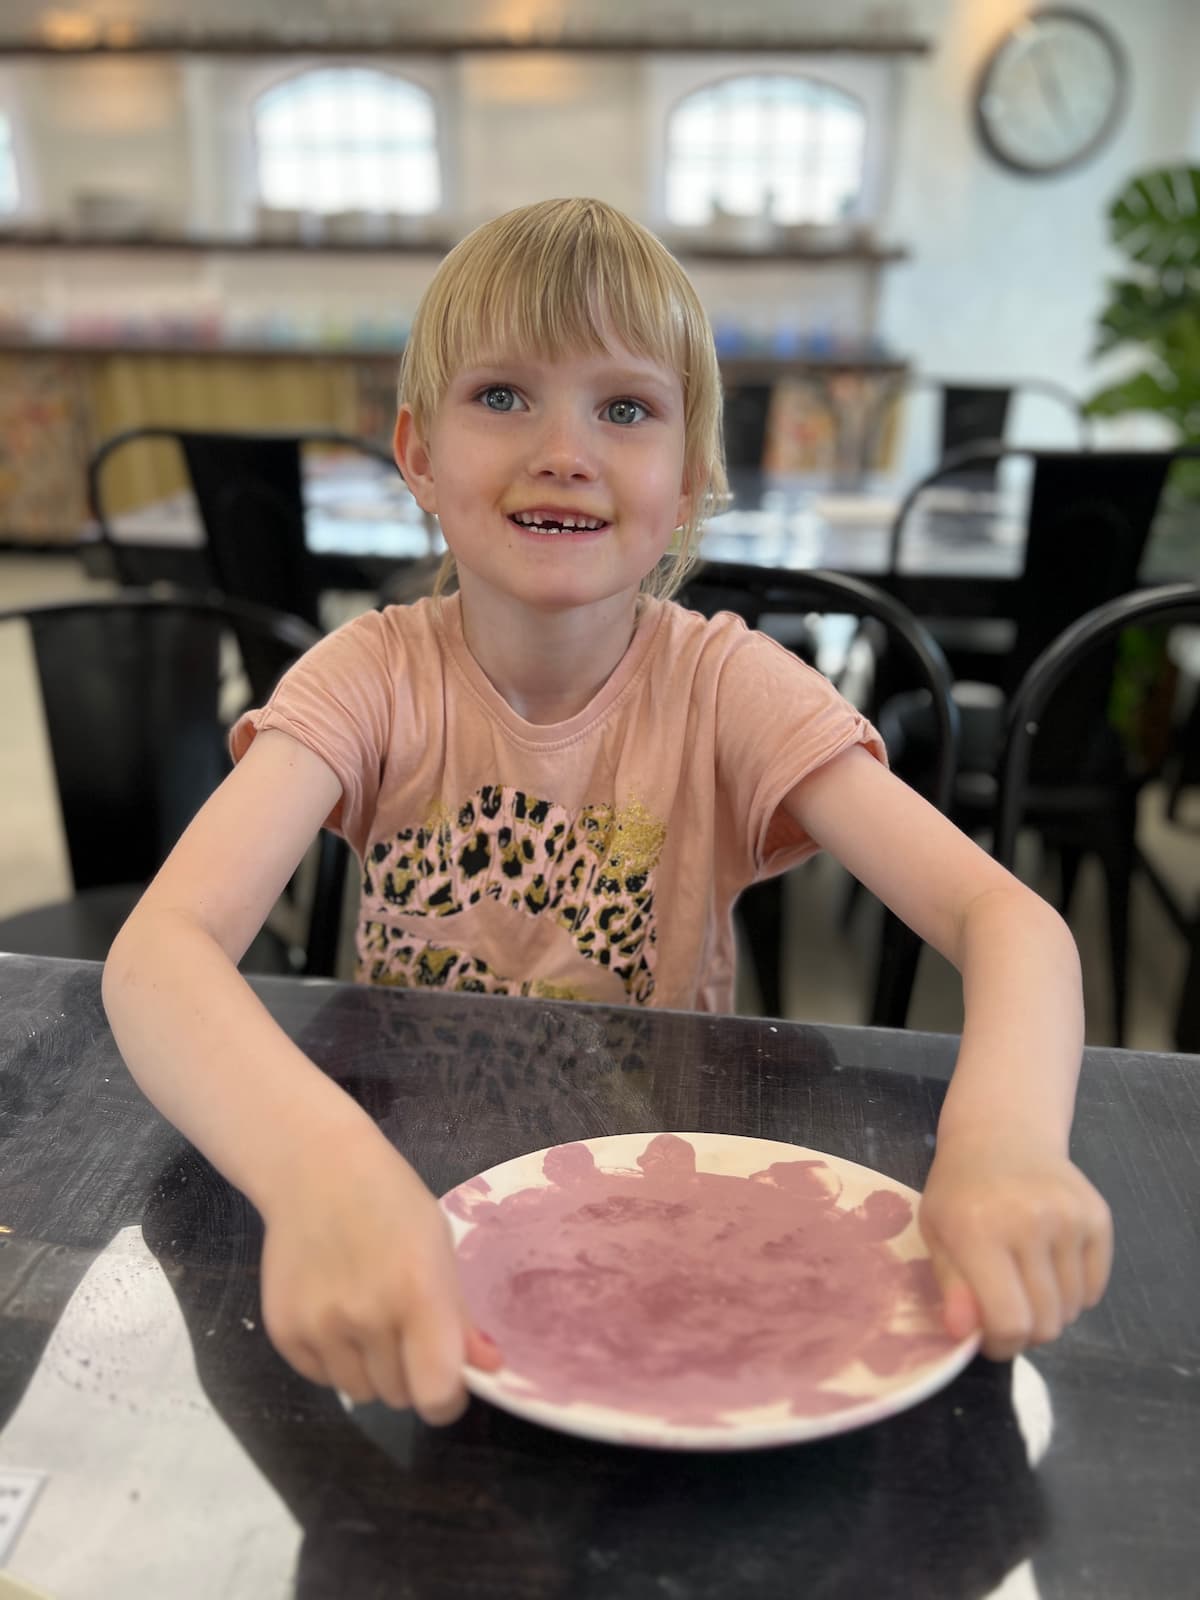 En glad ung pige viser stolt sin tallerken frem hos Funart keramik, som er perfekt til familieoplevelser Nordjylland.